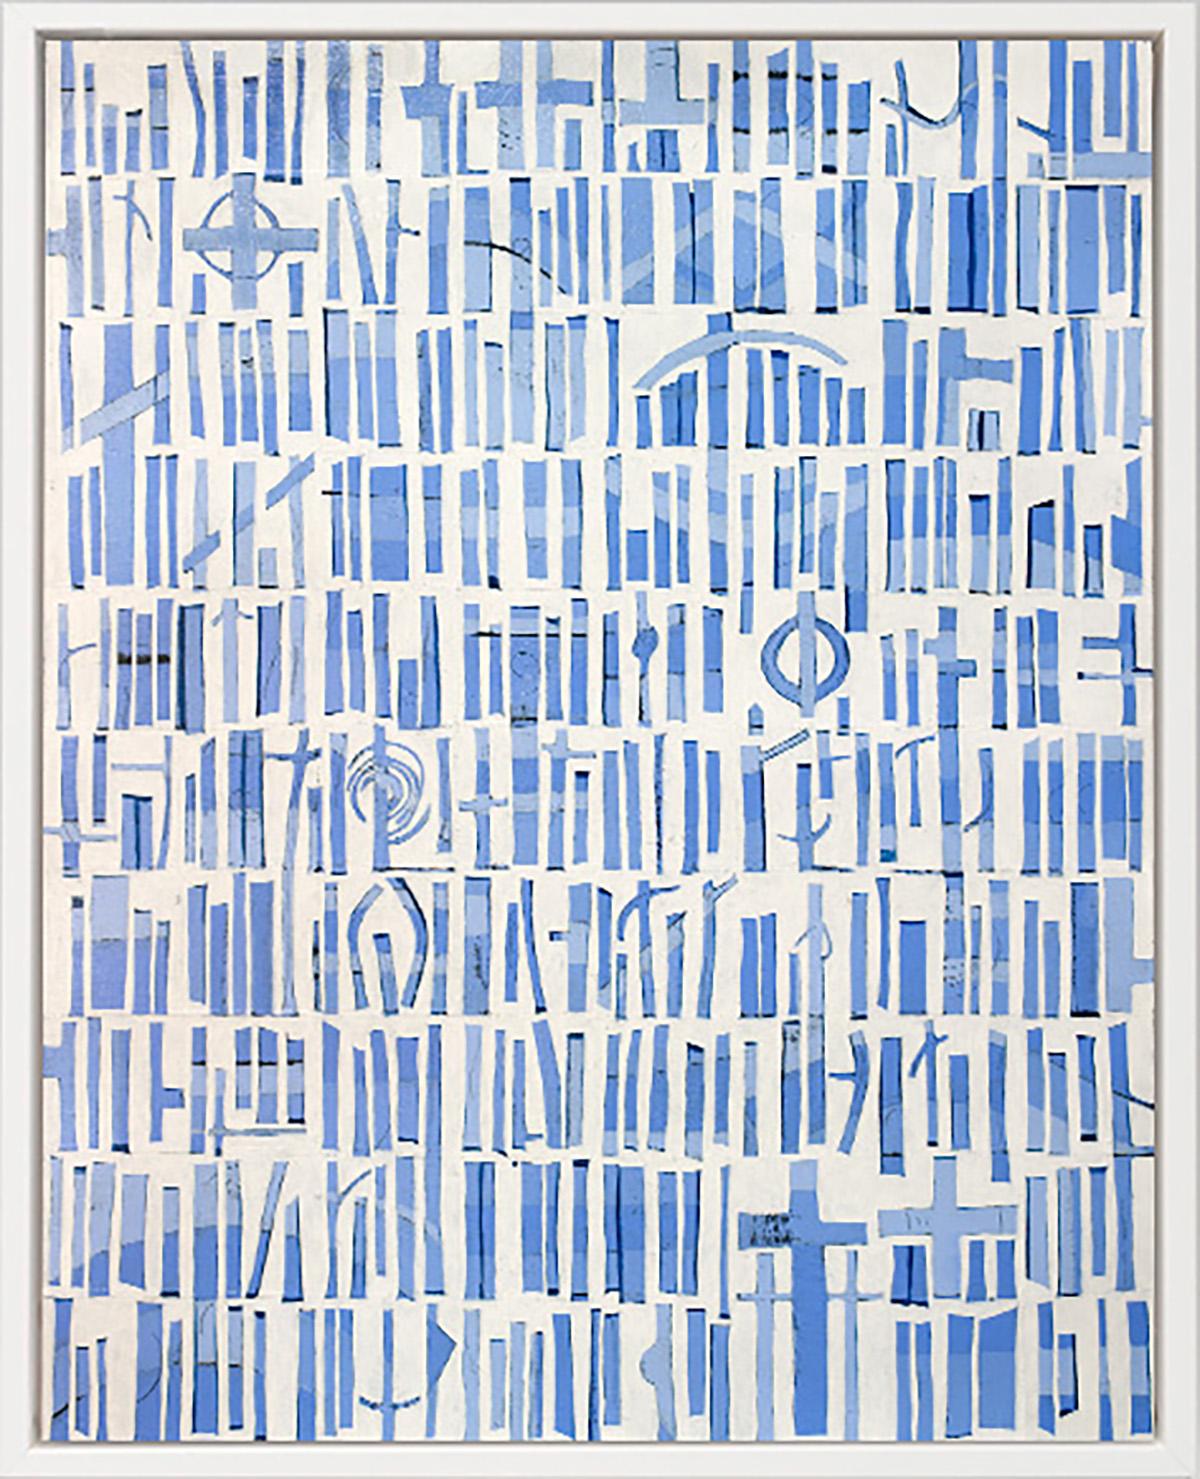 Abstract Print Sofie Swann - « Une journée d'été à Nantucket » Impression giclée en édition limitée, 152,4 x 122,4 cm